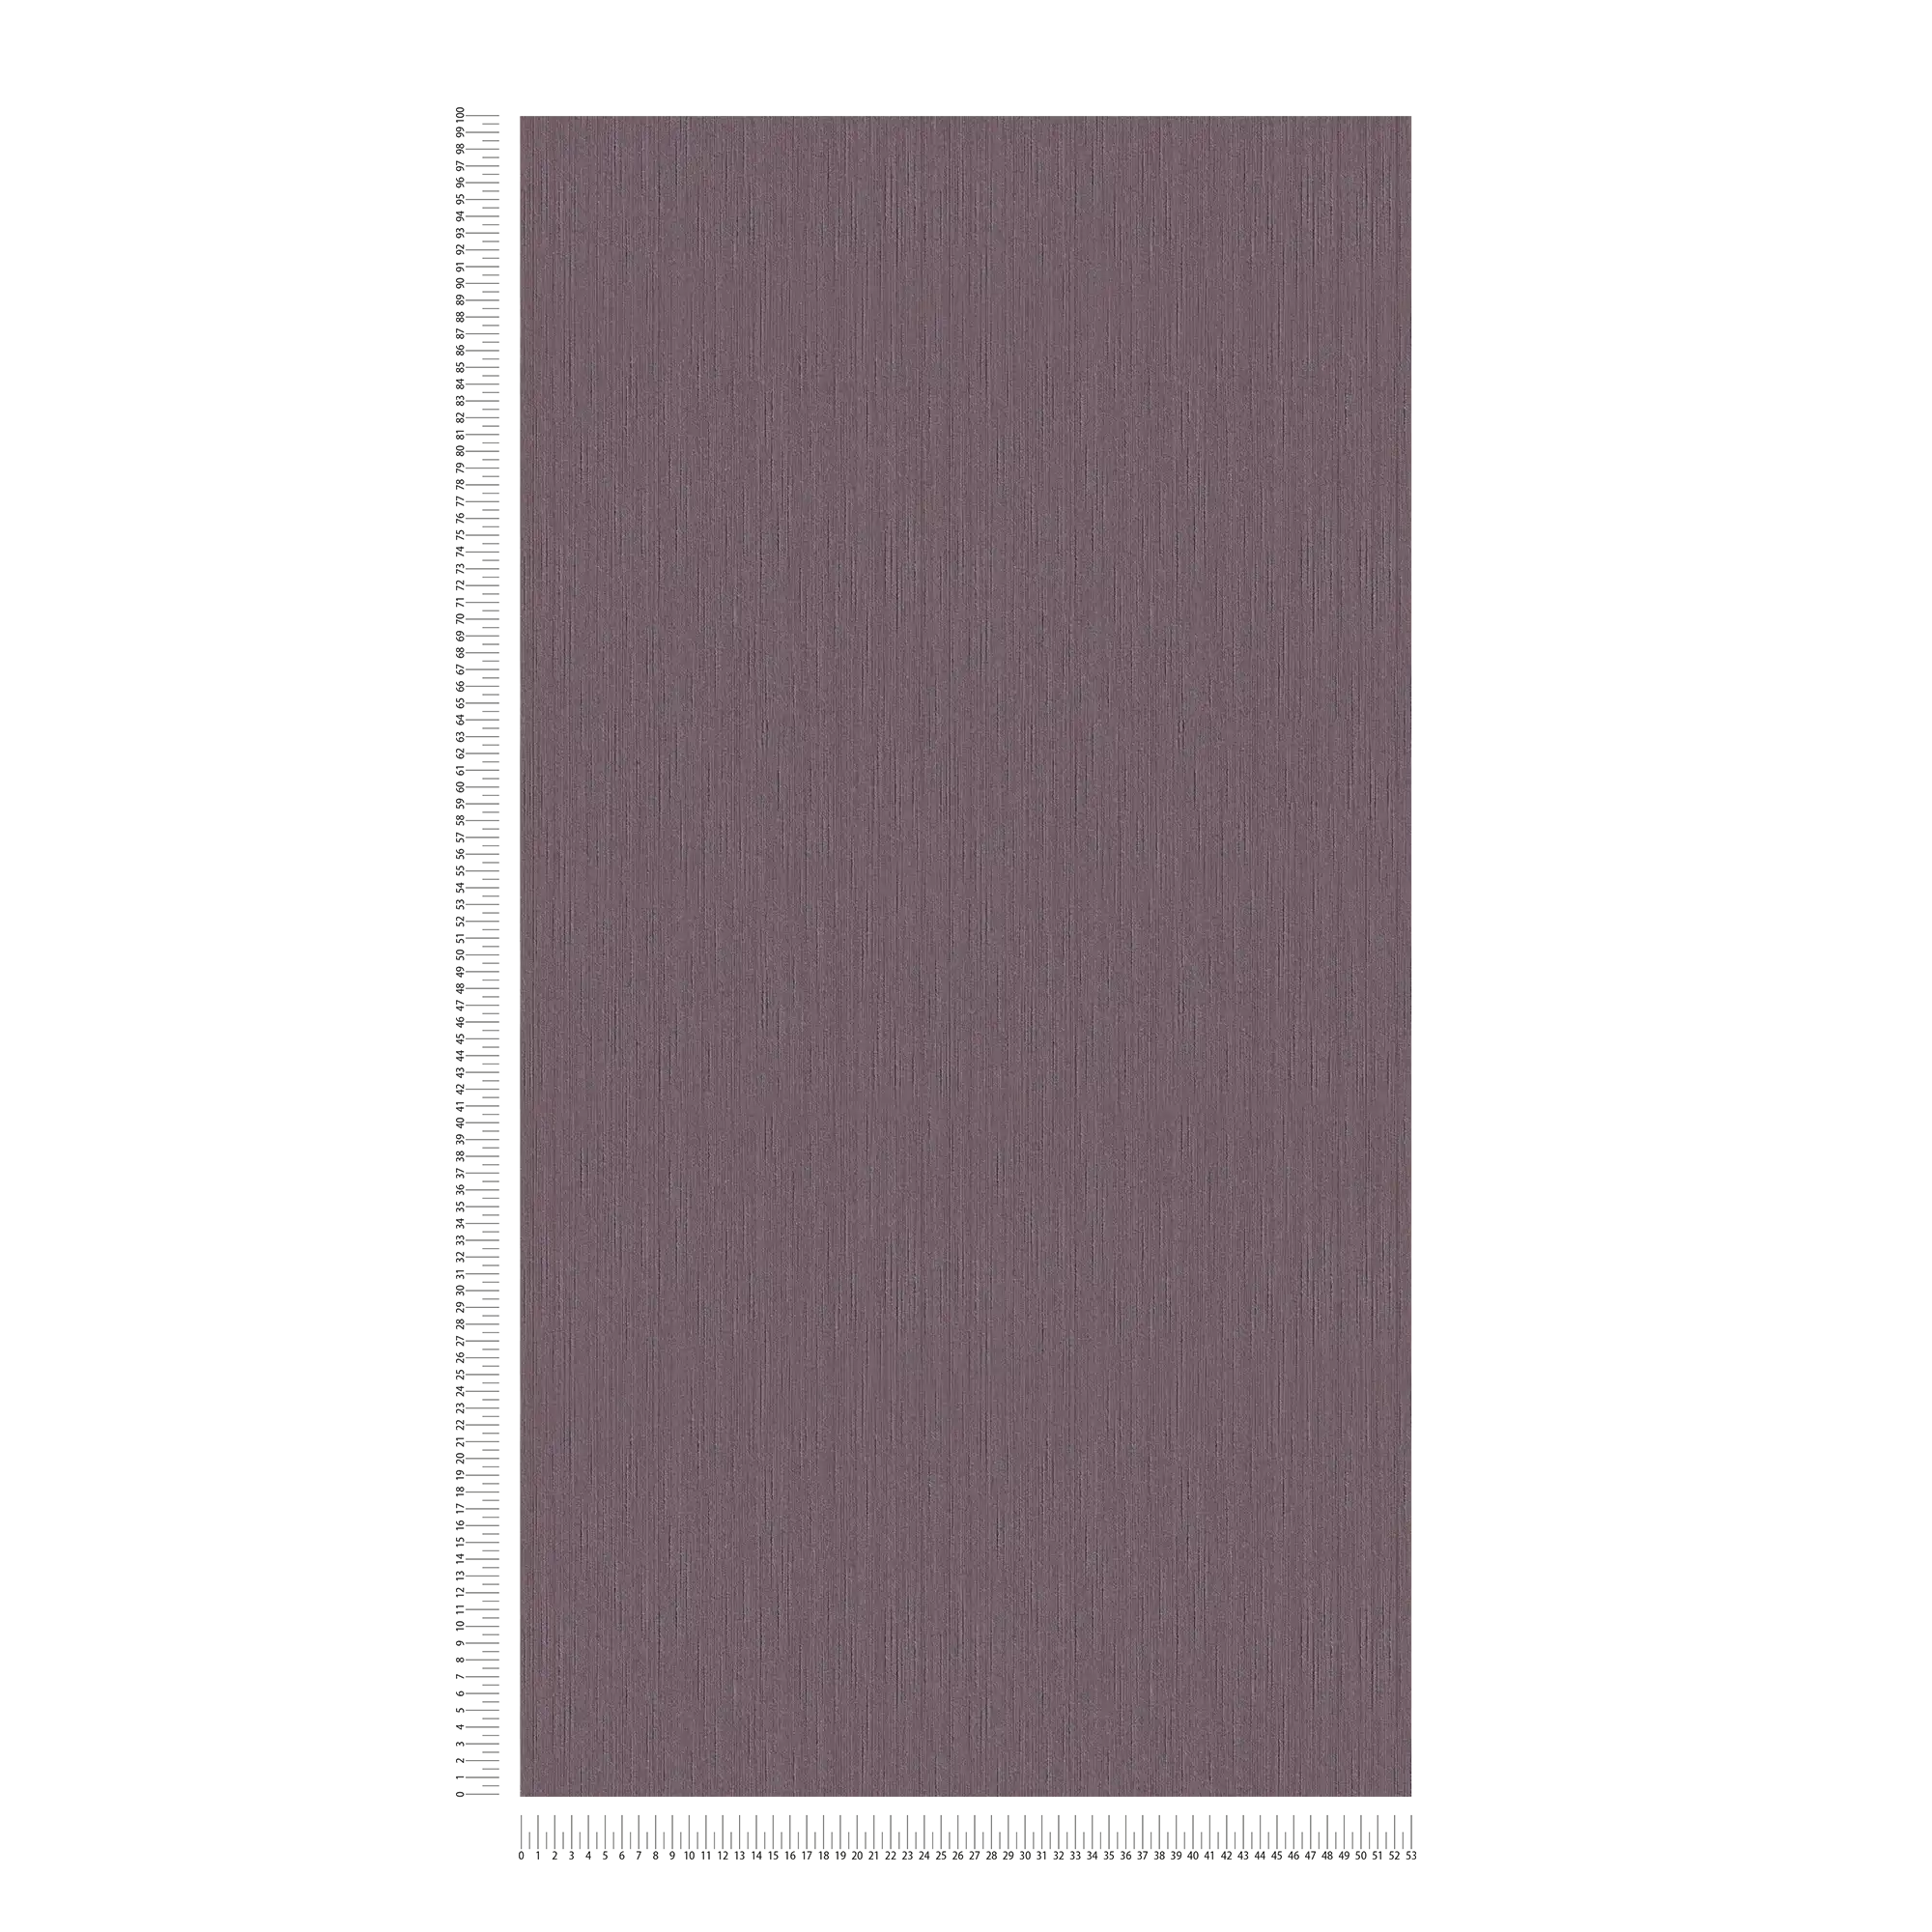             Tapete dunkle Malve mit natürlicher Struktur – Lila, Violett
        